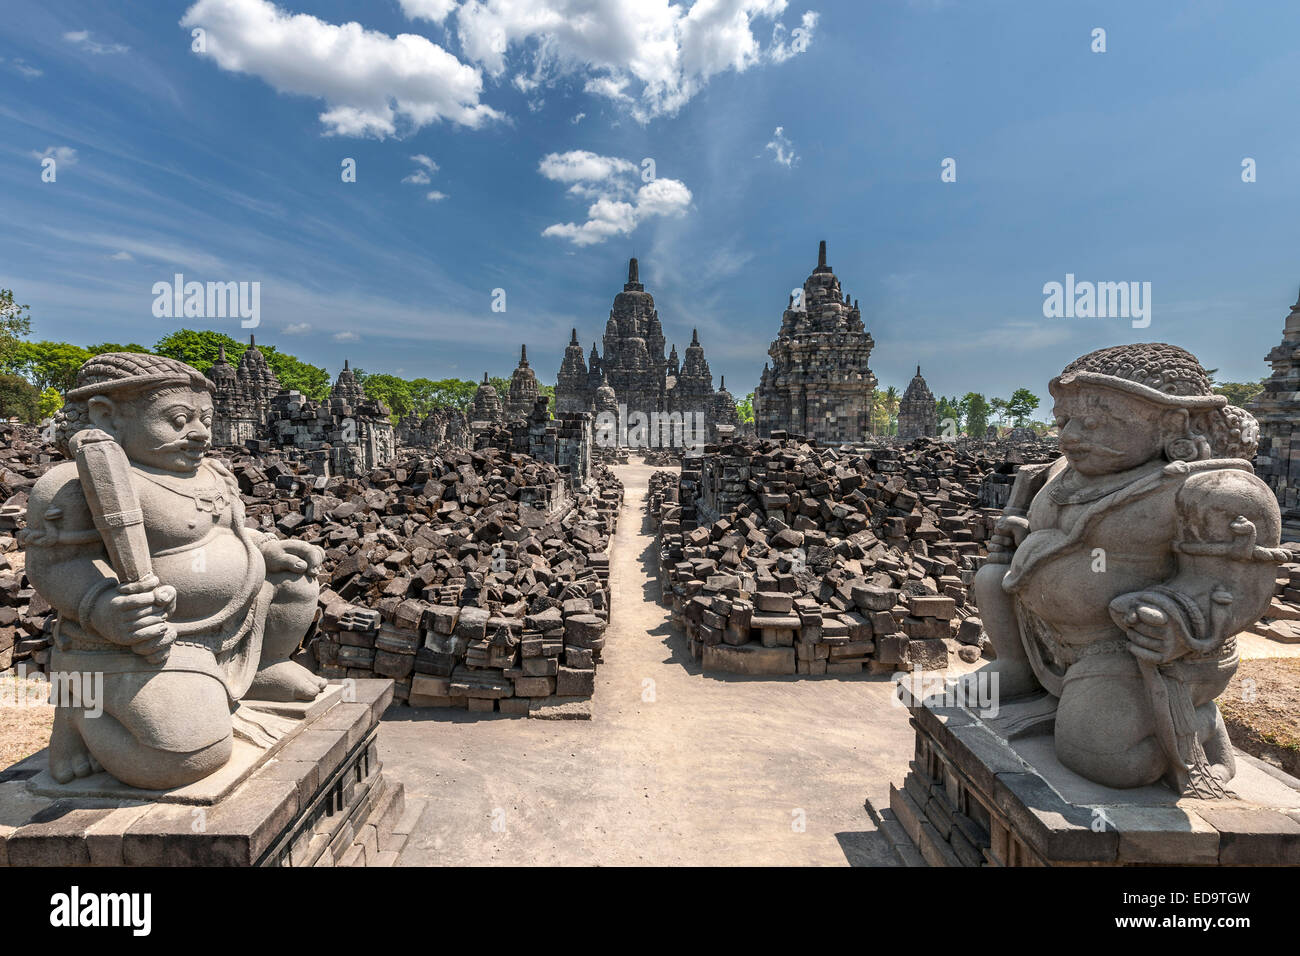 Candi Sewu, partie de temple de Prambanan, un 9ème siècle composé temple hindou près de Yogyakarta, dans le centre de Java, en Indonésie. Banque D'Images